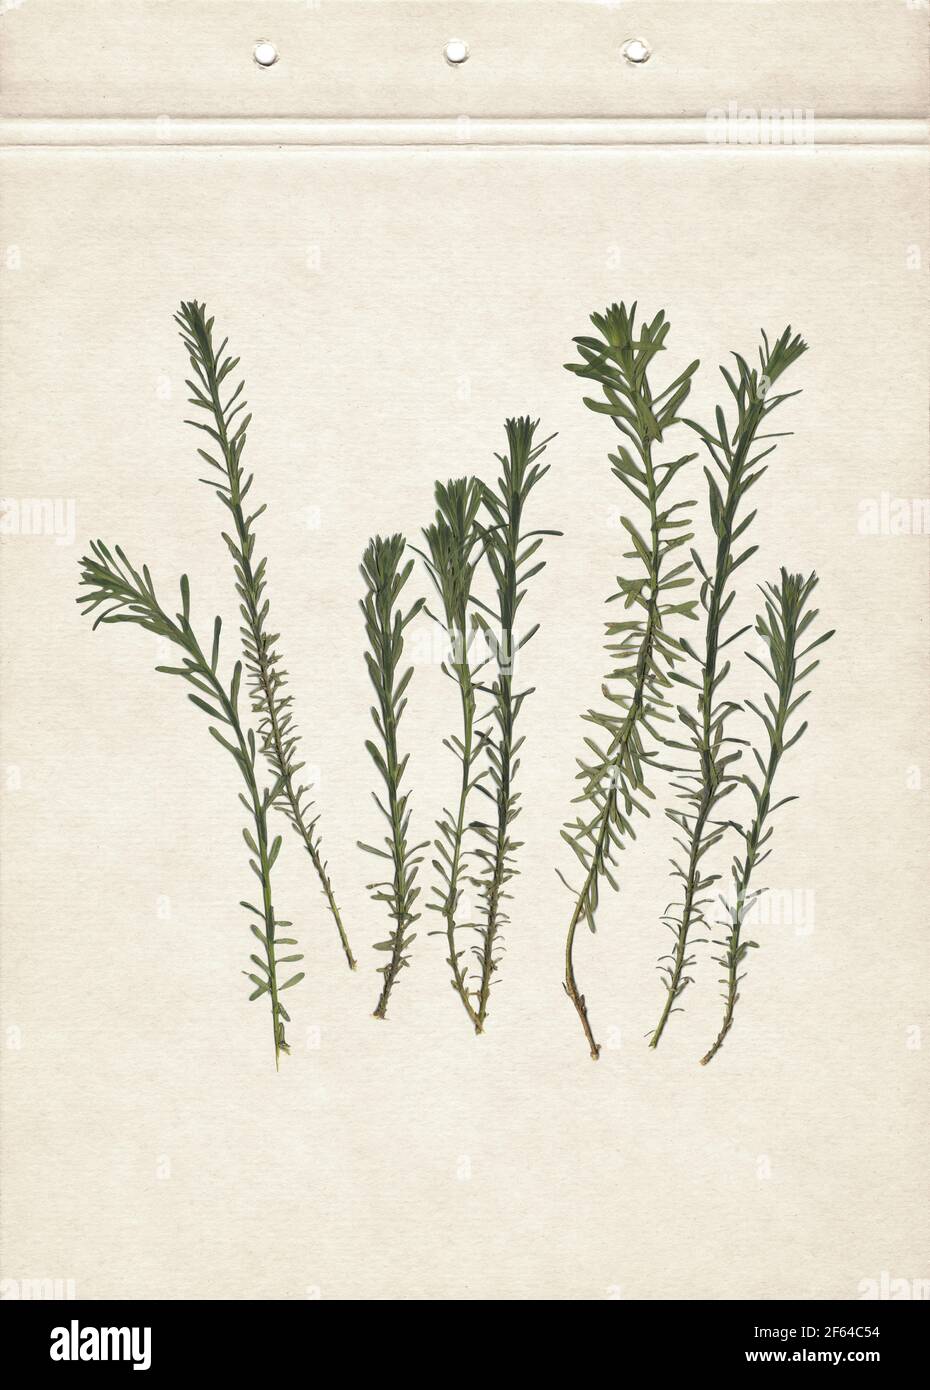 Hierbas prensadas y secas. Imagen escaneada. Herbario vintage fondo sobre papel antiguo. Composición de la hierba sobre un cartón. Foto de stock